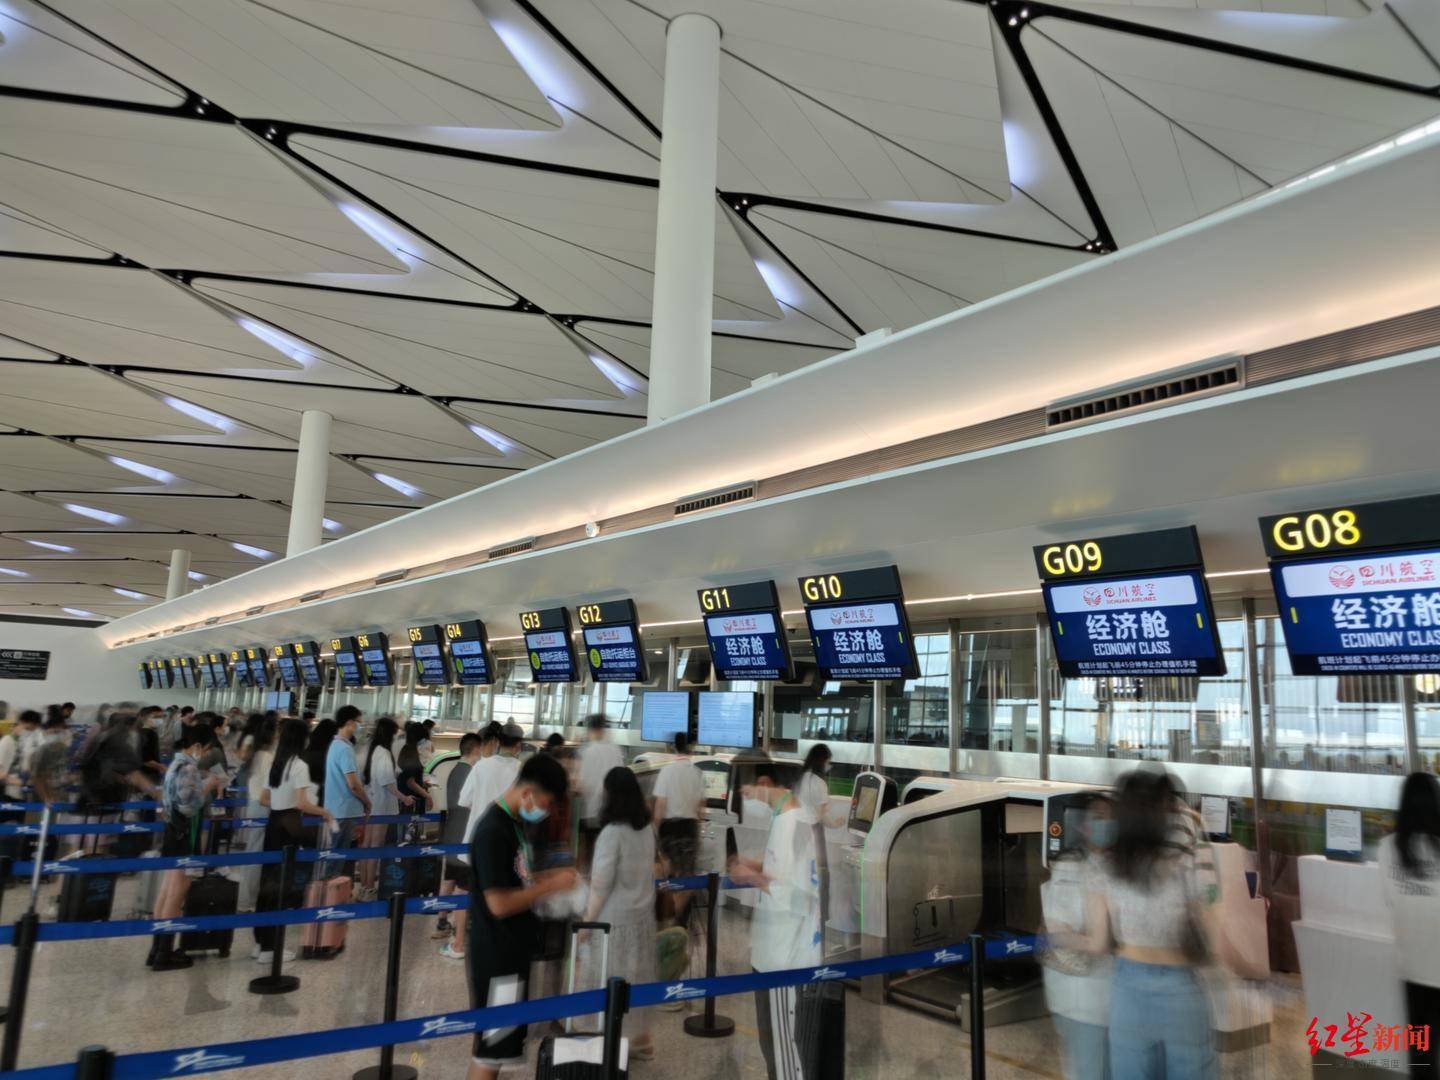 开放72个登机口,涉及22条乘机流程……天府国际机场进行第四次综合